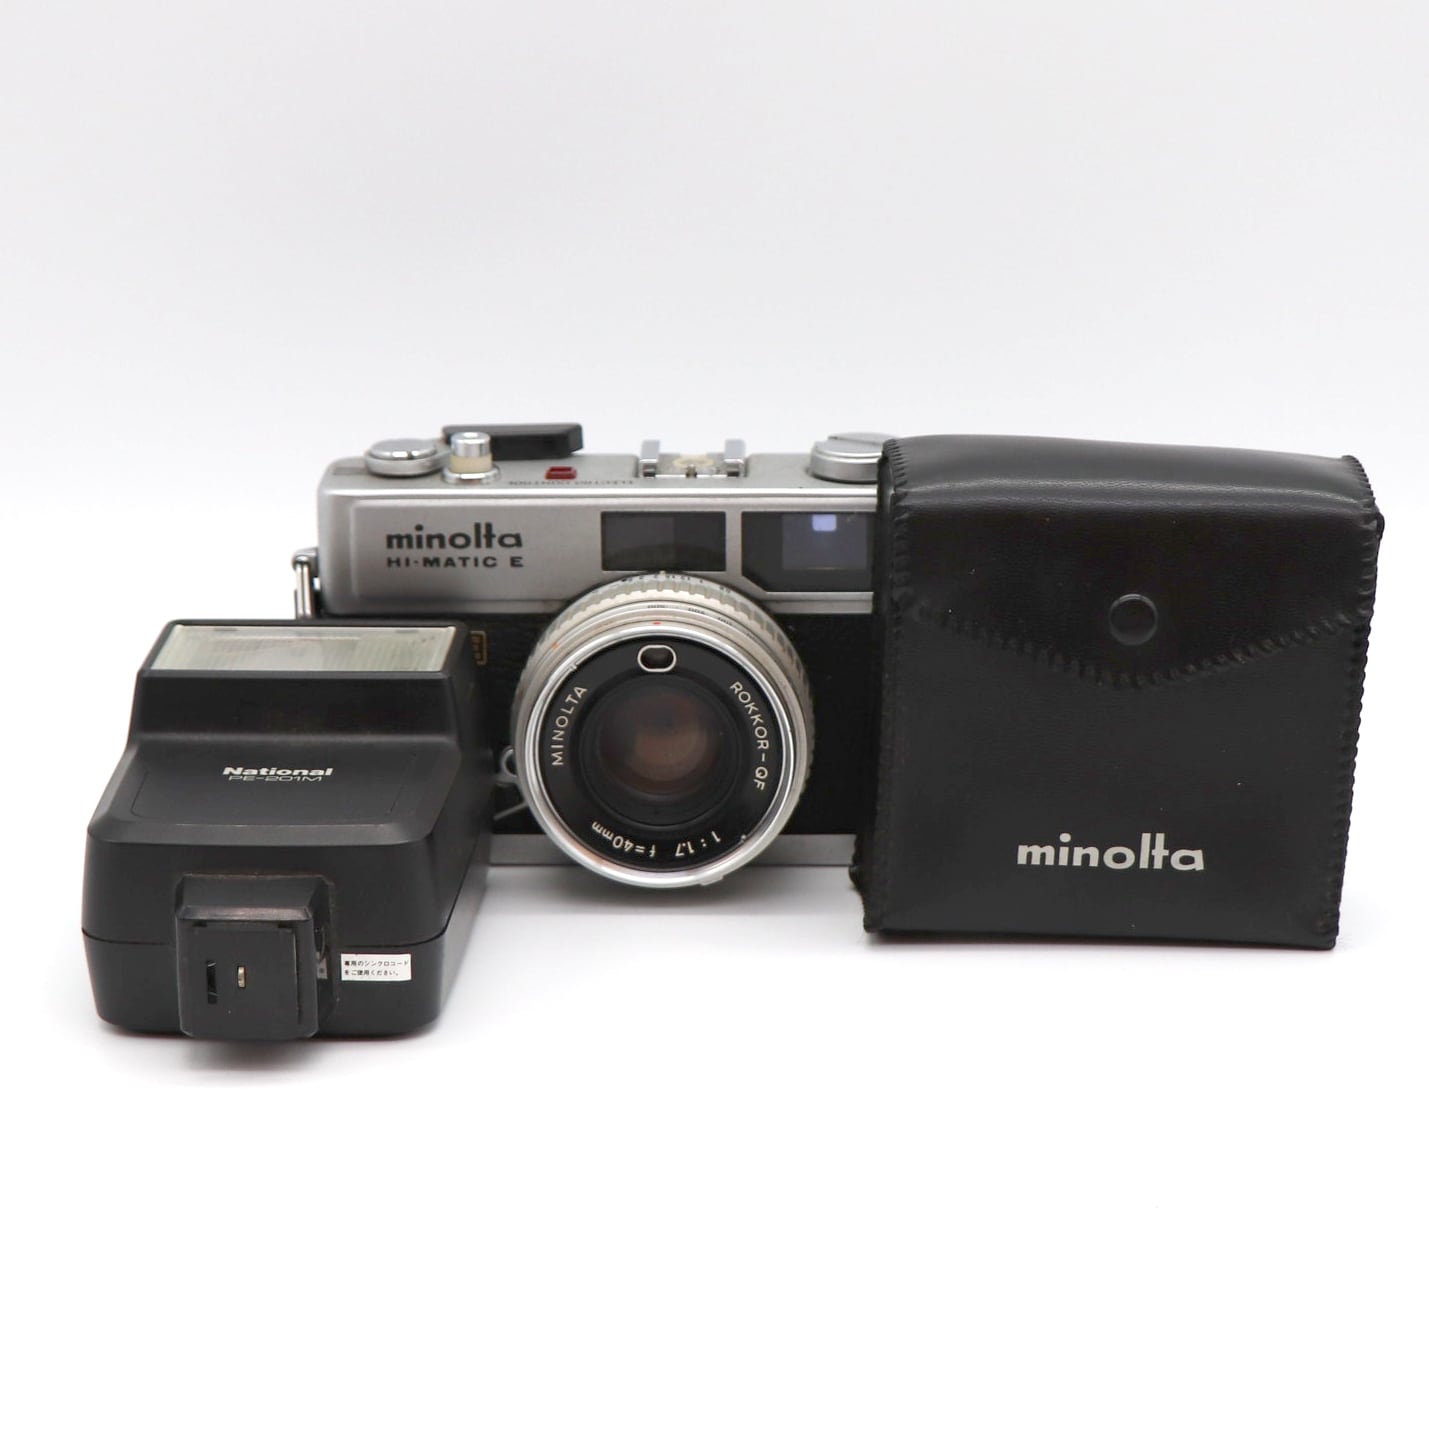 minolta HI-MATIC E レンズ付き フラッシュ付き - フィルムカメラ